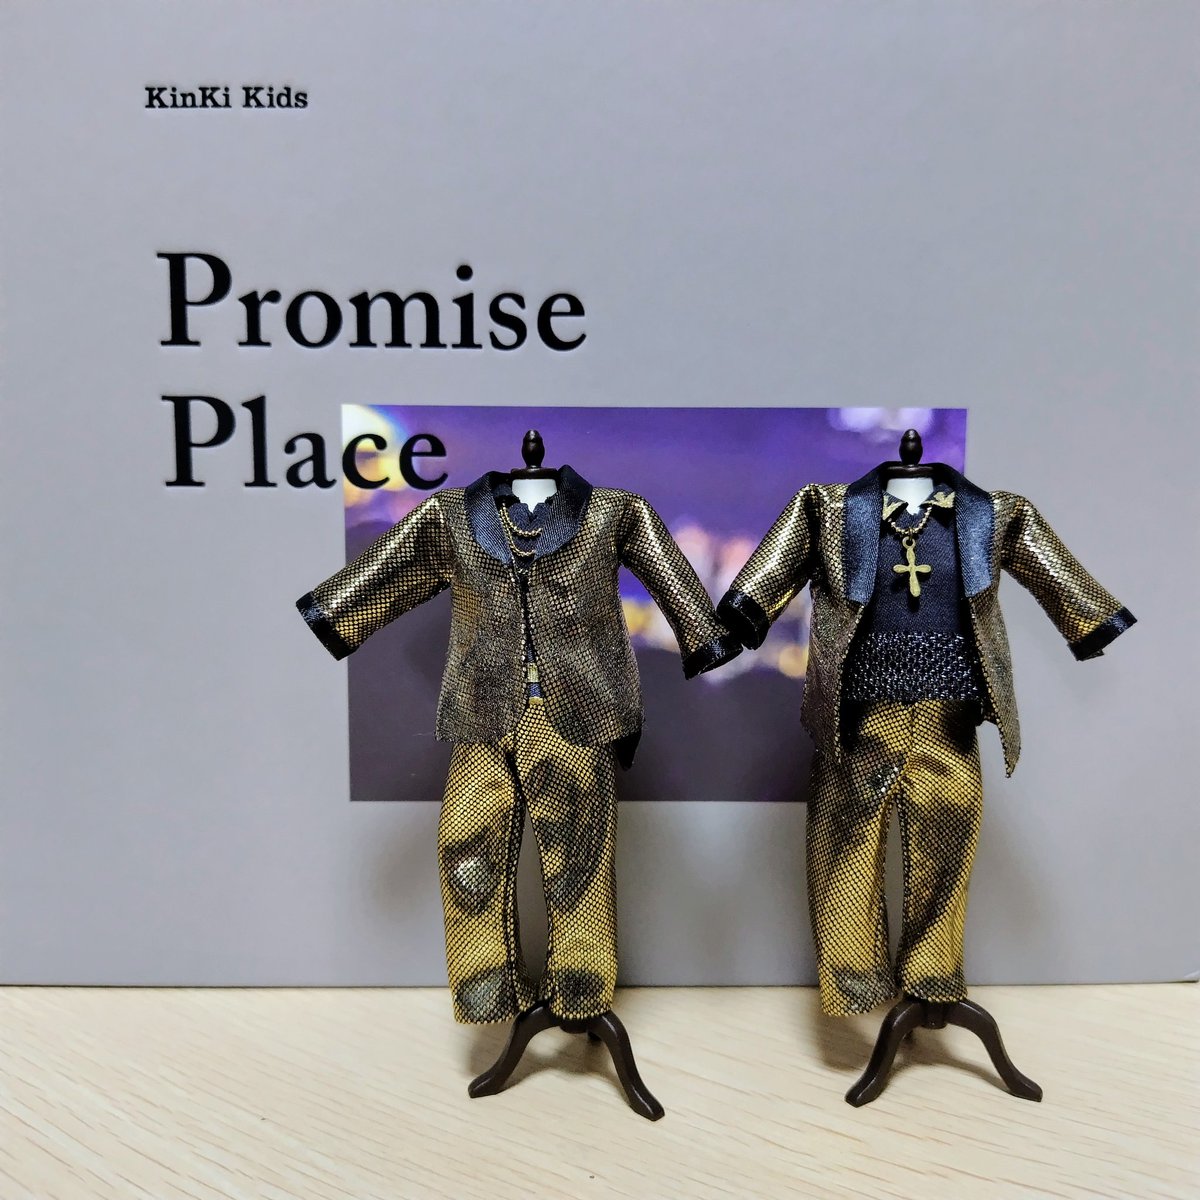 絶対！また会おうね！約束！
#KinKiKids
#PromisePlace